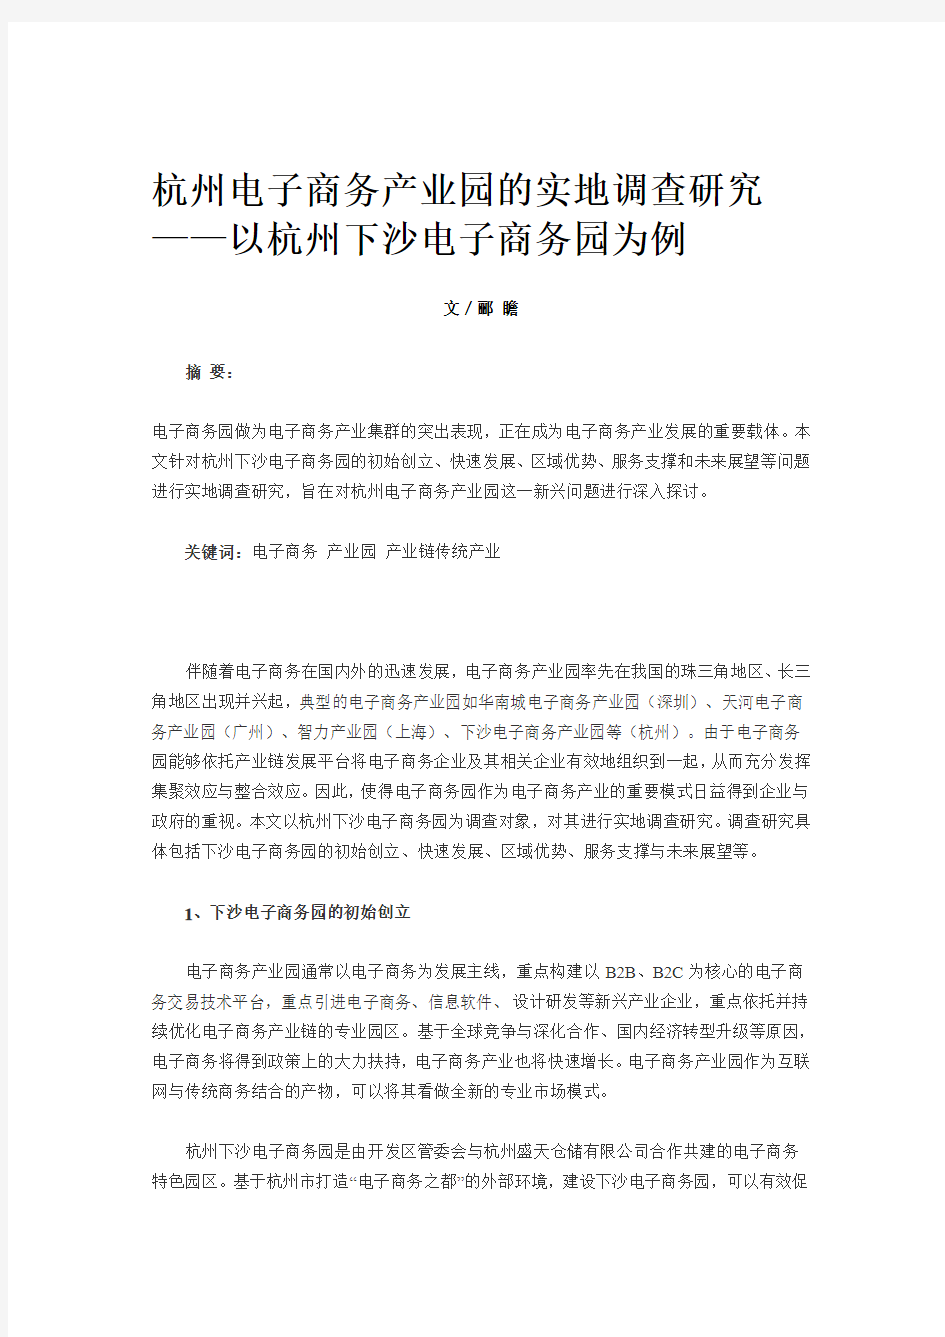 杭州电子商务产业园的实地调查研究 ——以杭州下沙电子商务园为例